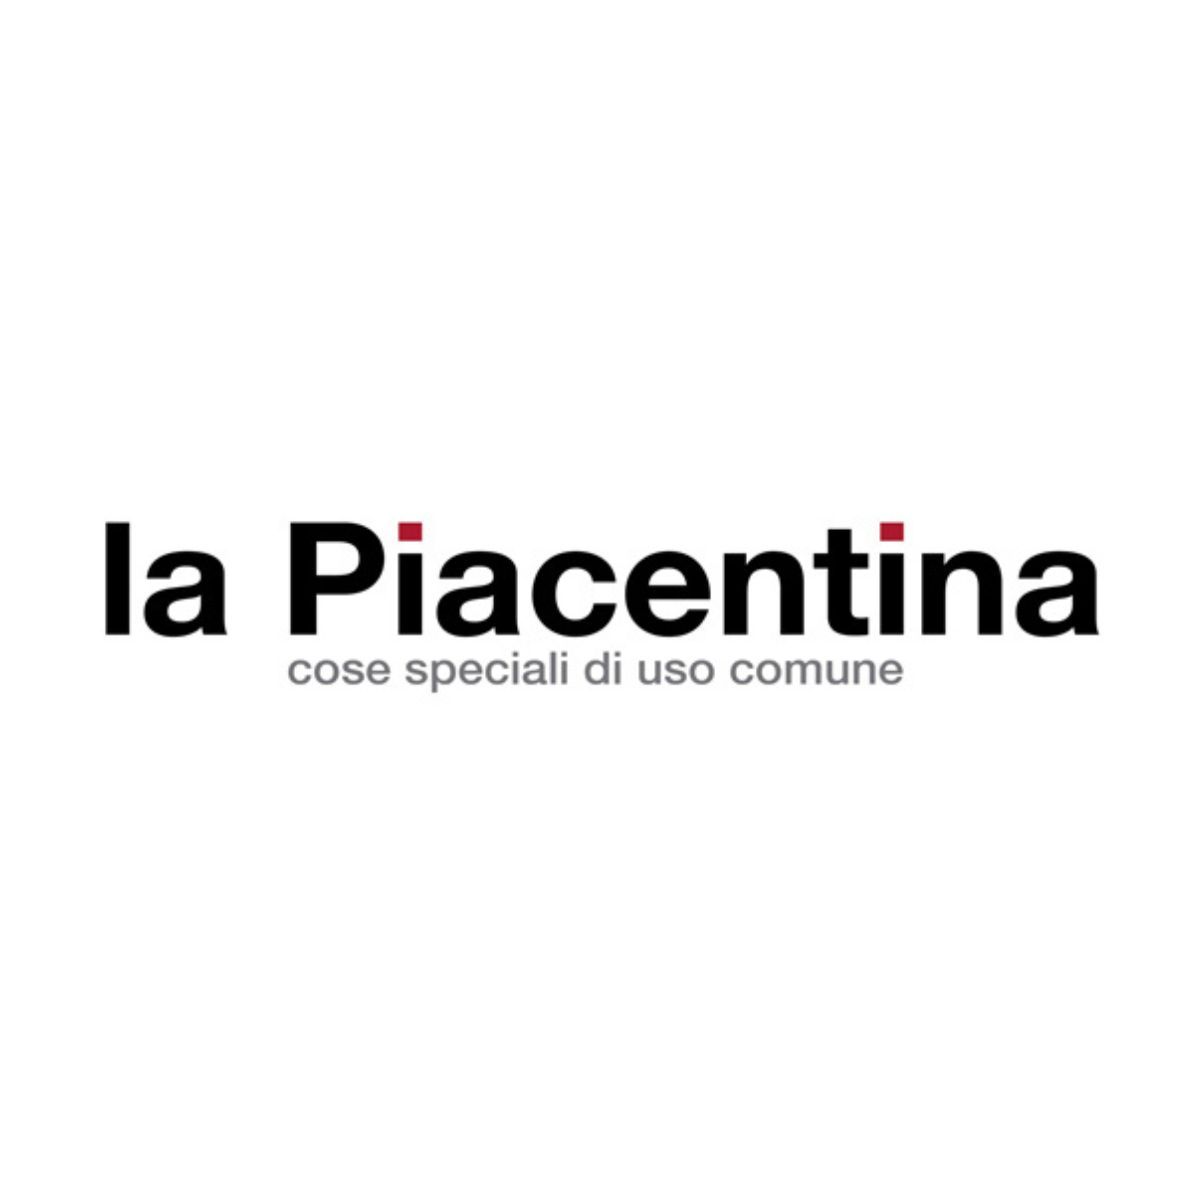 La Piacentina